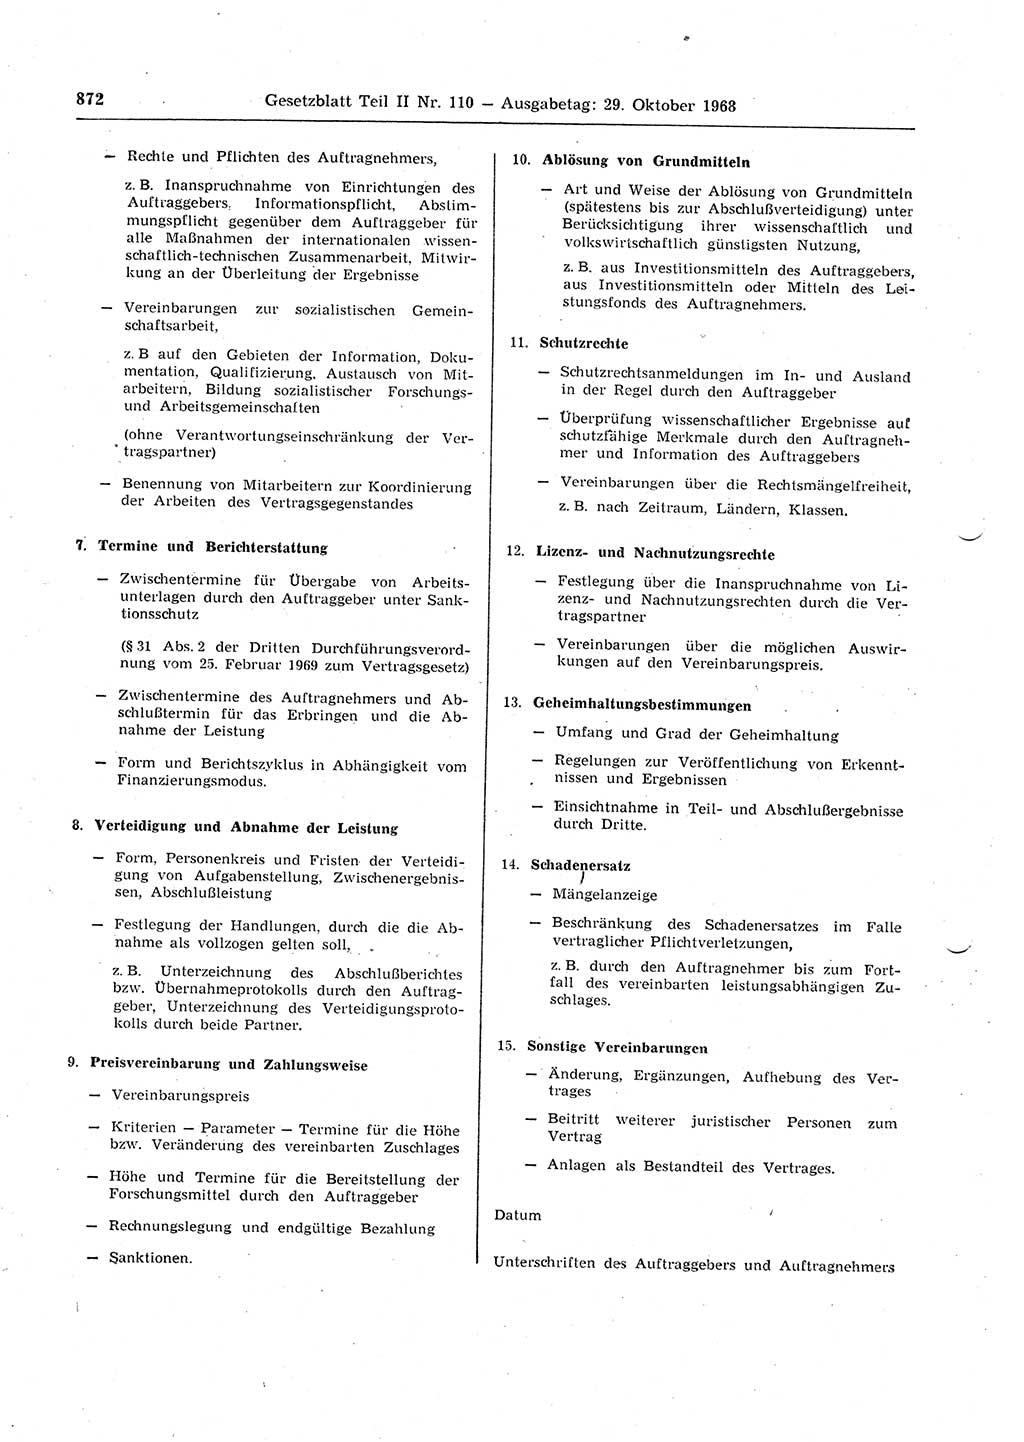 Gesetzblatt (GBl.) der Deutschen Demokratischen Republik (DDR) Teil ⅠⅠ 1968, Seite 872 (GBl. DDR ⅠⅠ 1968, S. 872)